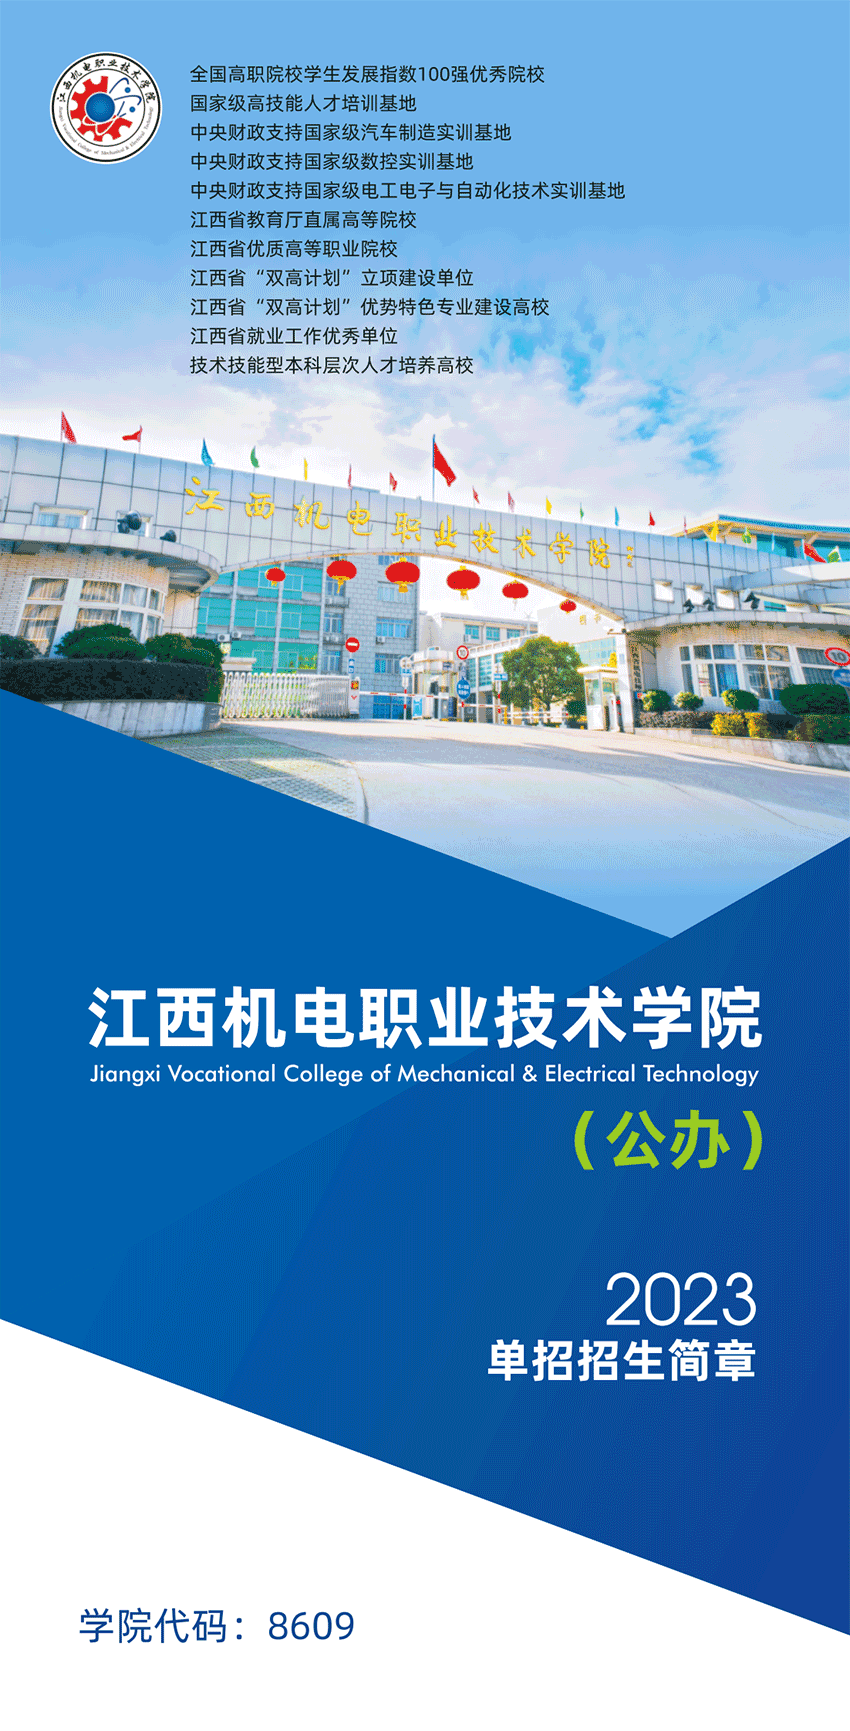 2023年江西机电职业技术学院单招简章